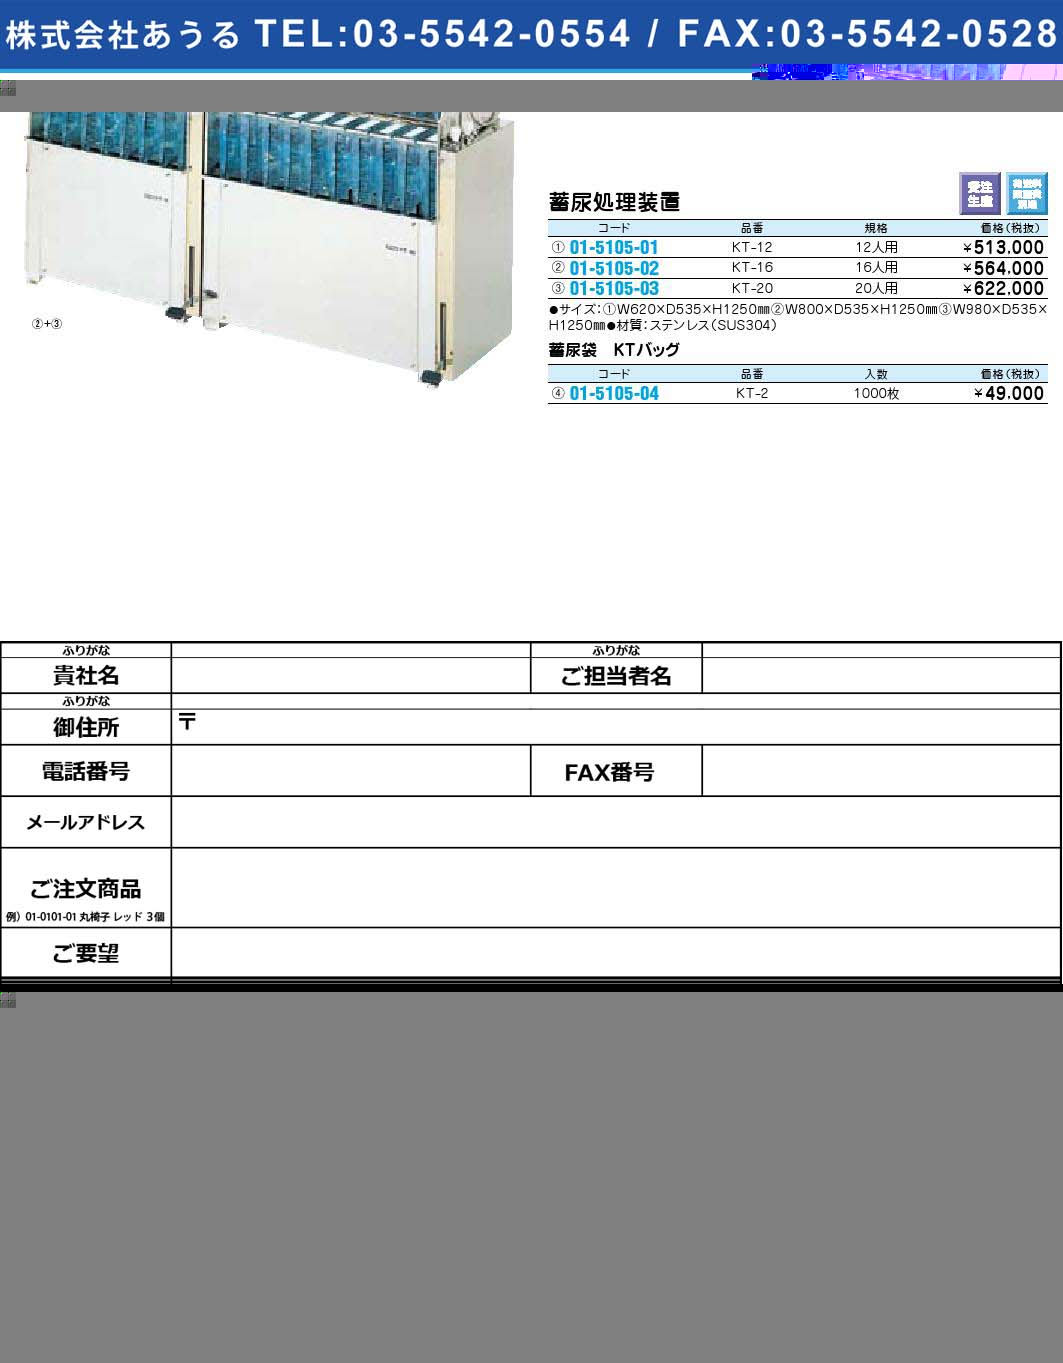 蓄尿処理装置 KT-16(01-5105-02)